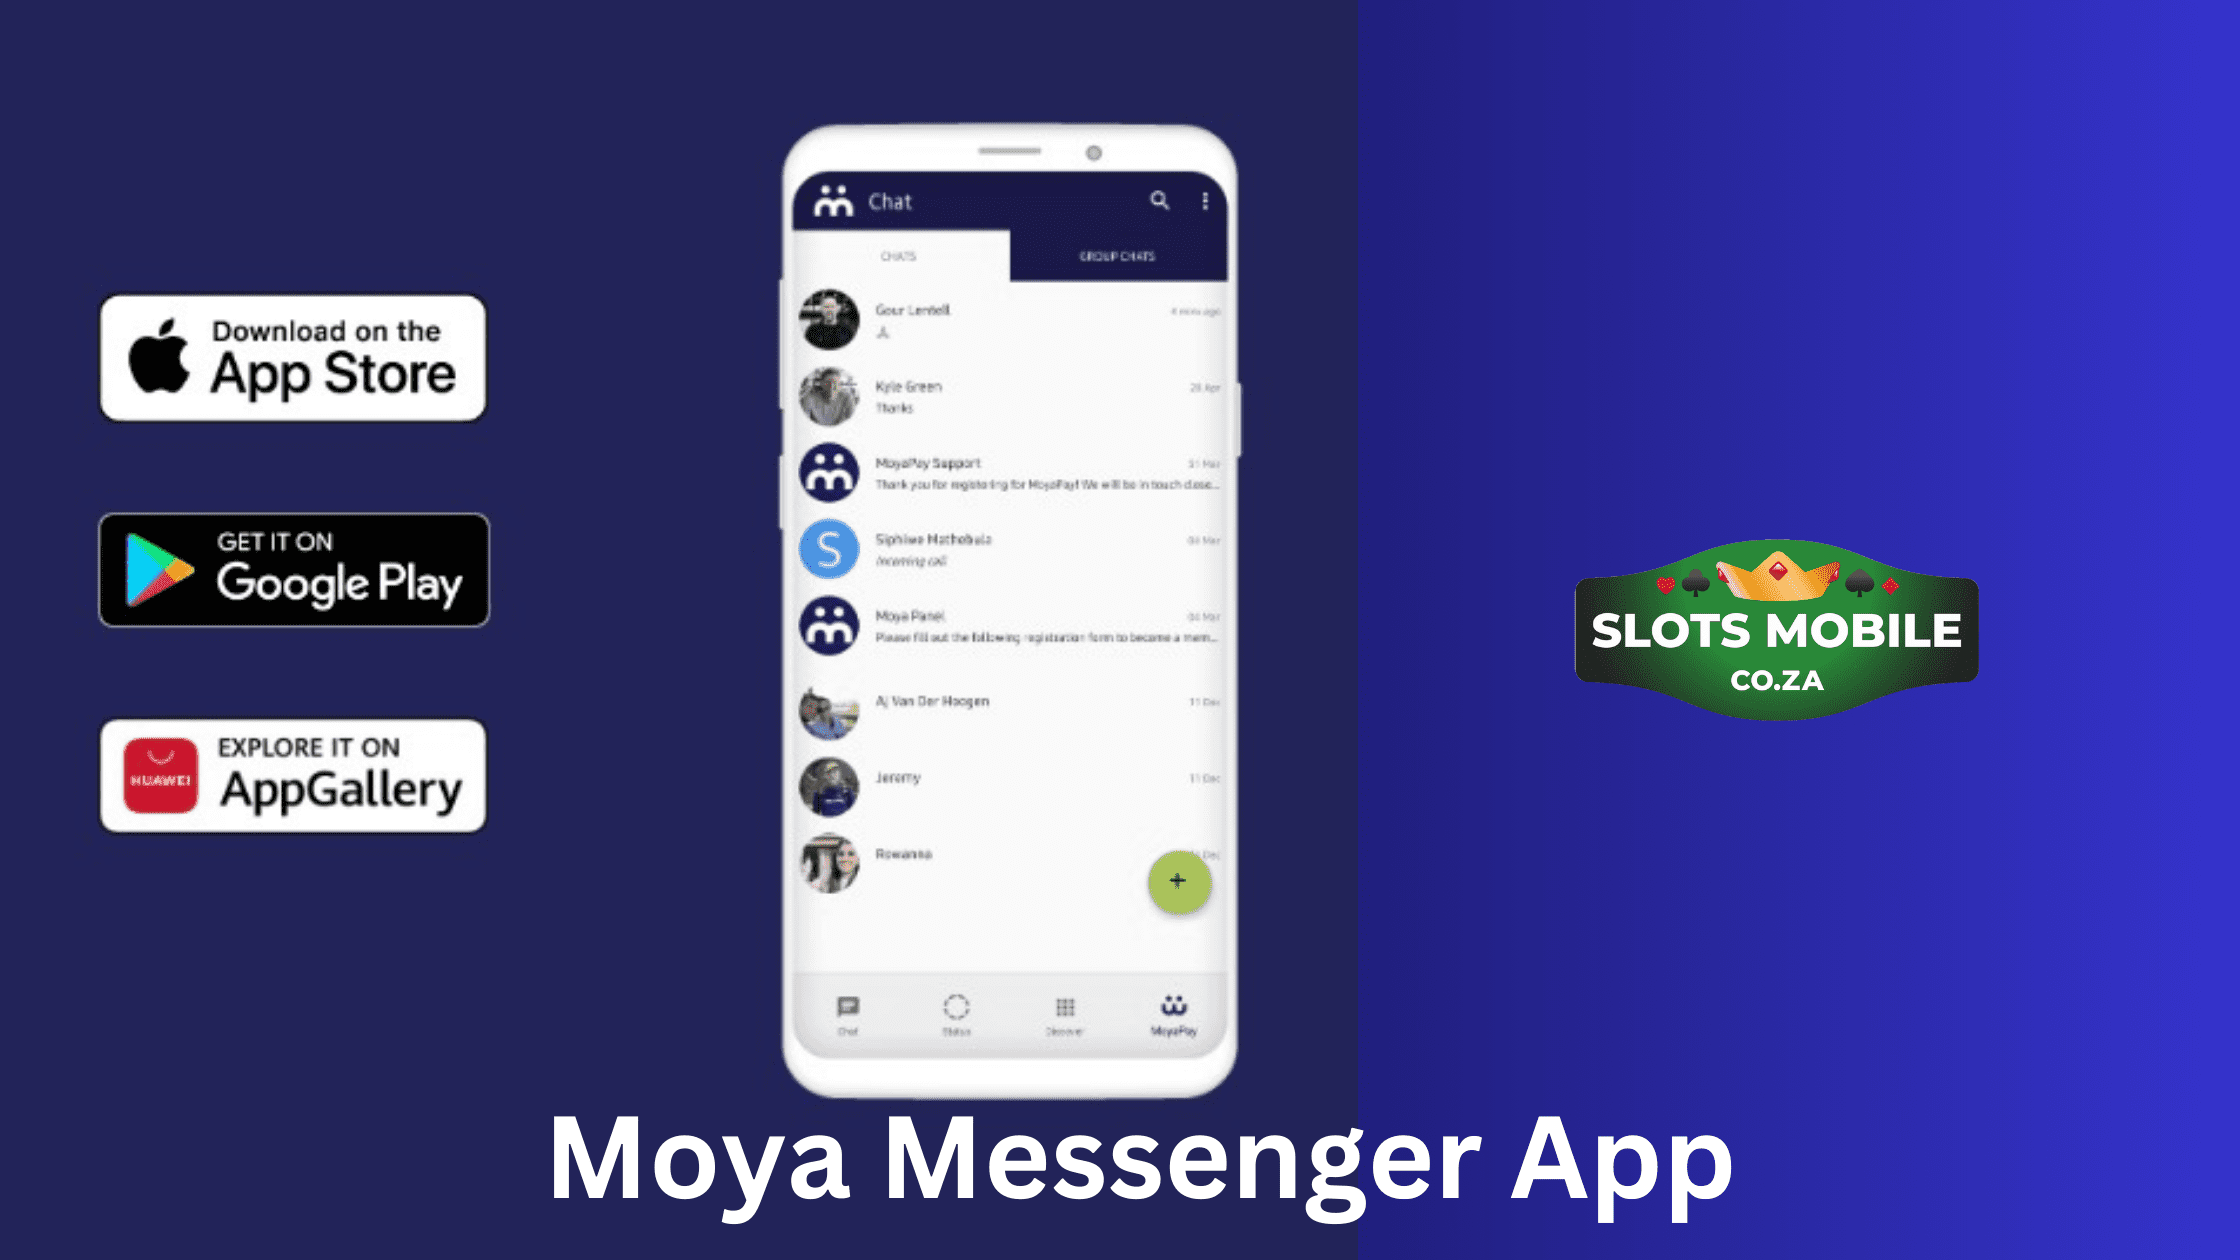 Moya Messenger App